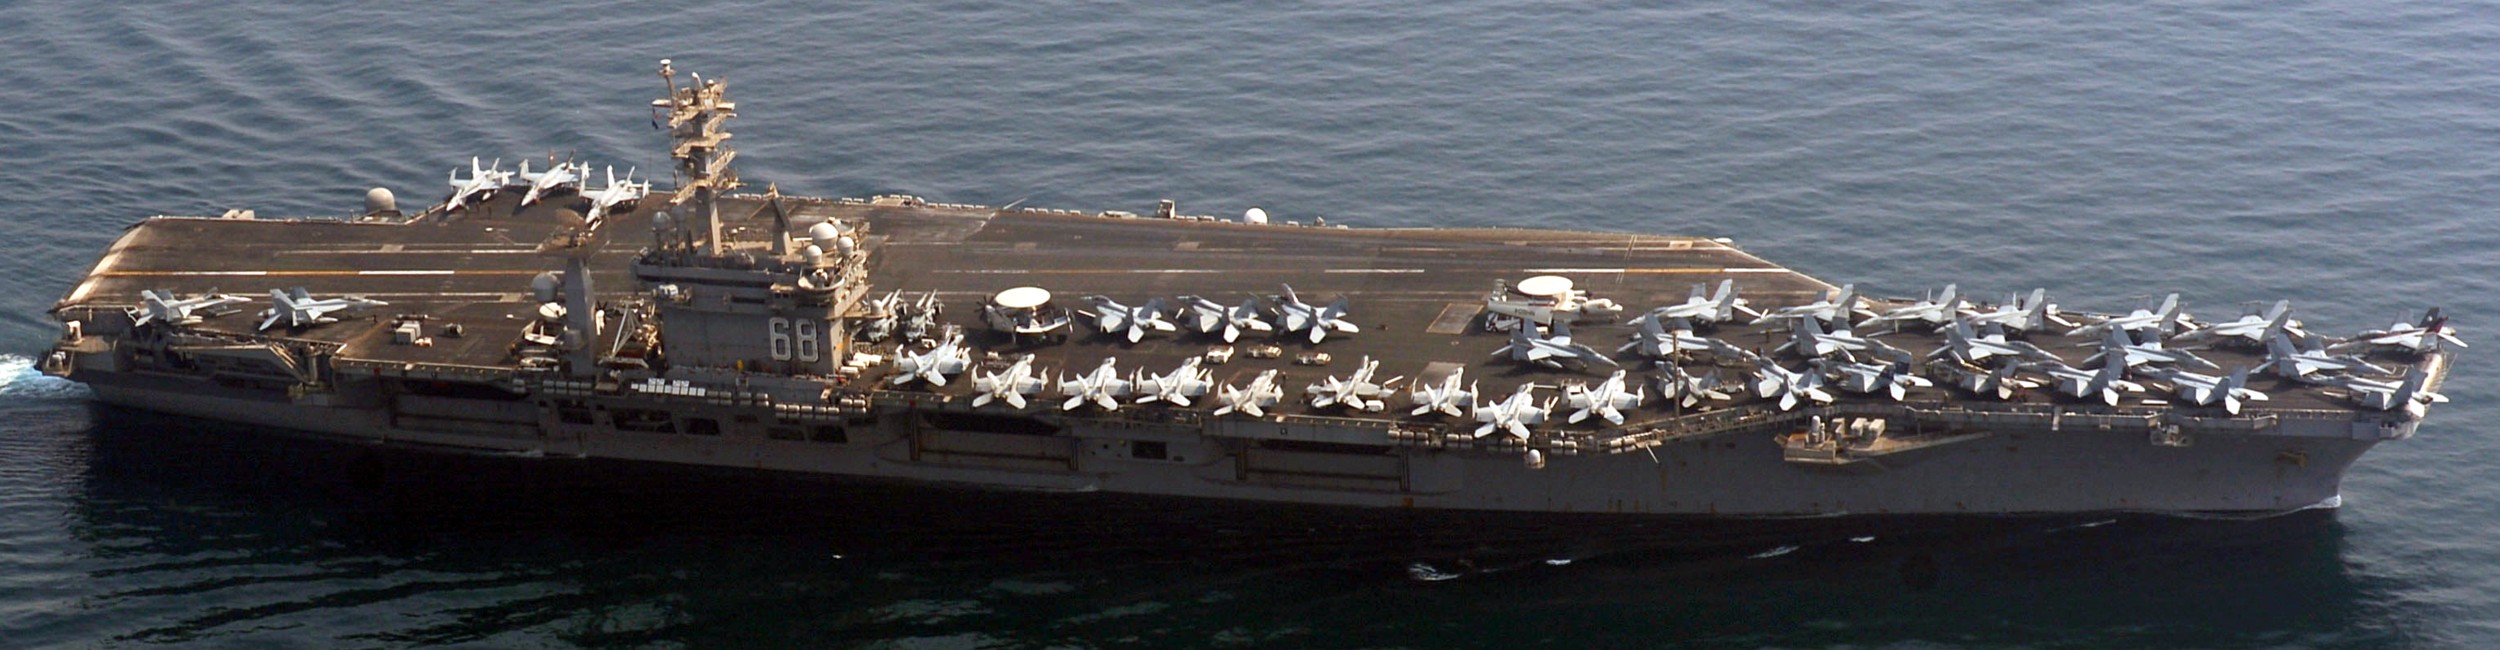 cvn-68 uss nimitz aircraft carrier air wing cvw-11 us navy arabian gulf 72